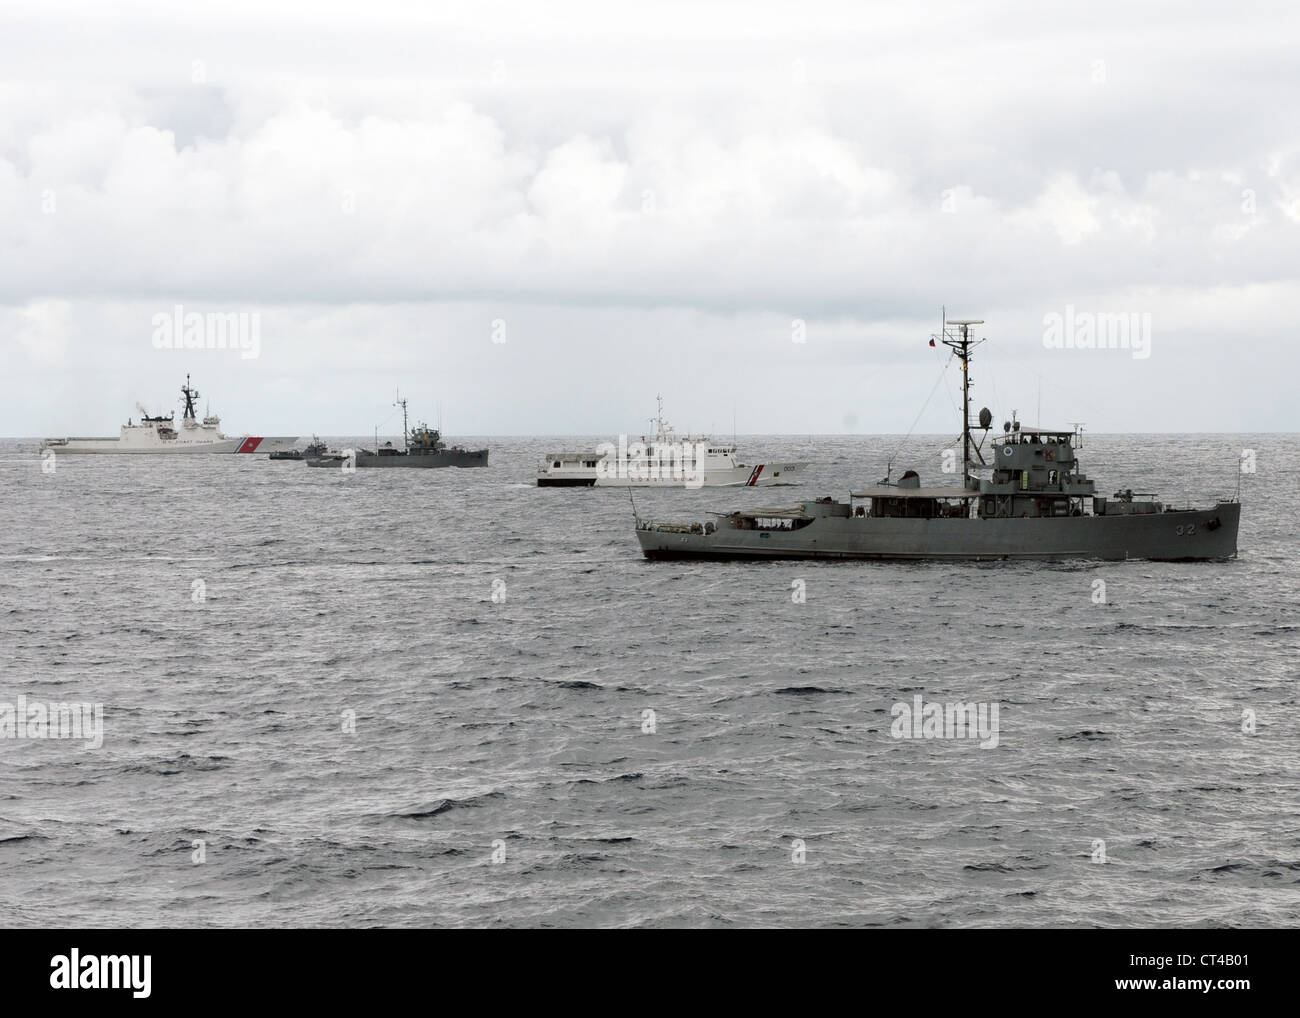 BRP Iloilo (PS 32), PCG Pampanga (SAVV 003), BRP Malvar (PS 19), BRP Abcede (PG 114) et USCGC Waesche (WMSL 751) se joignent à USS Vandegreft (FFG 48) pour un exercice photo (PHOTOEX). Cet événement marque la conclusion de la phase en mer de l'exercice coopération à flot préparation et formation (CARAT) Philippines 2012. LE KARAT est une série d'exercices militaires bilatéraux entre la marine américaine et les forces armées du Bangladesh, du Brunei, du Cambodge, de l'Indonésie, de la Malaisie, des Philippines, de Singapour et de la Thaïlande. Le Timor oriental se joint à l'exercice pour la première fois en 2012 Banque D'Images